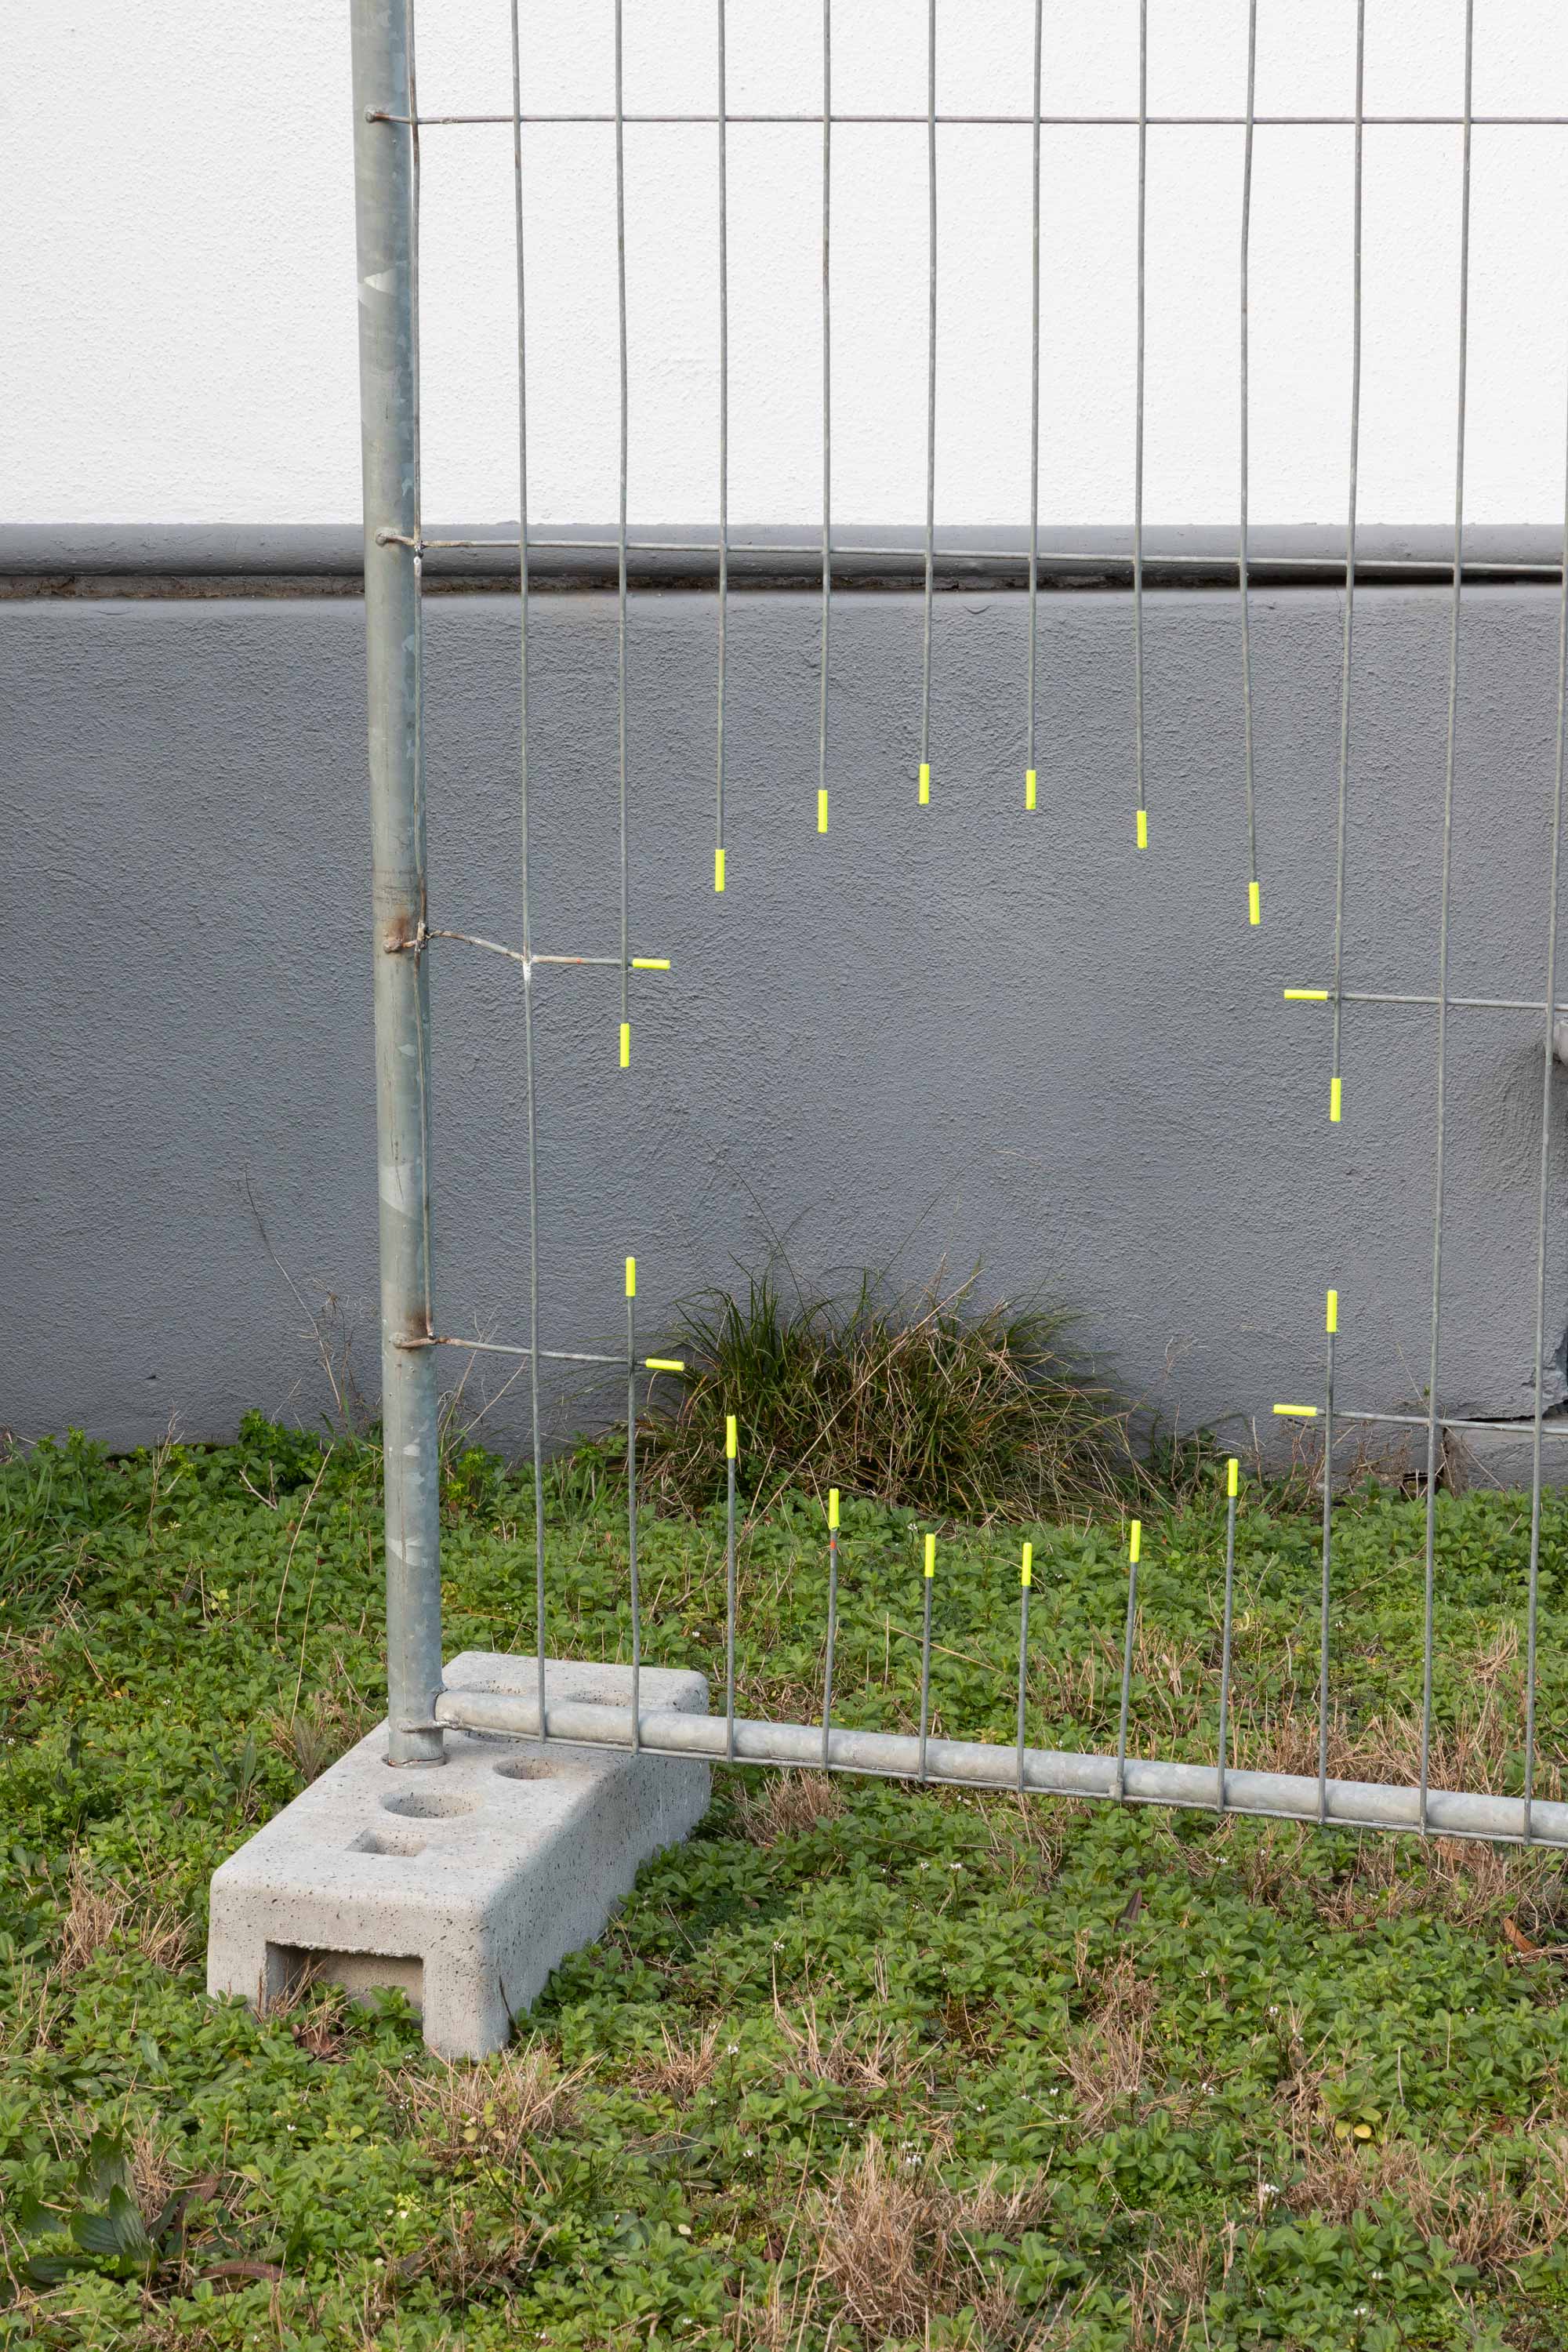 Clemens Lauer, *Gate Fence*, galvanized steel, 350×200cm⠀